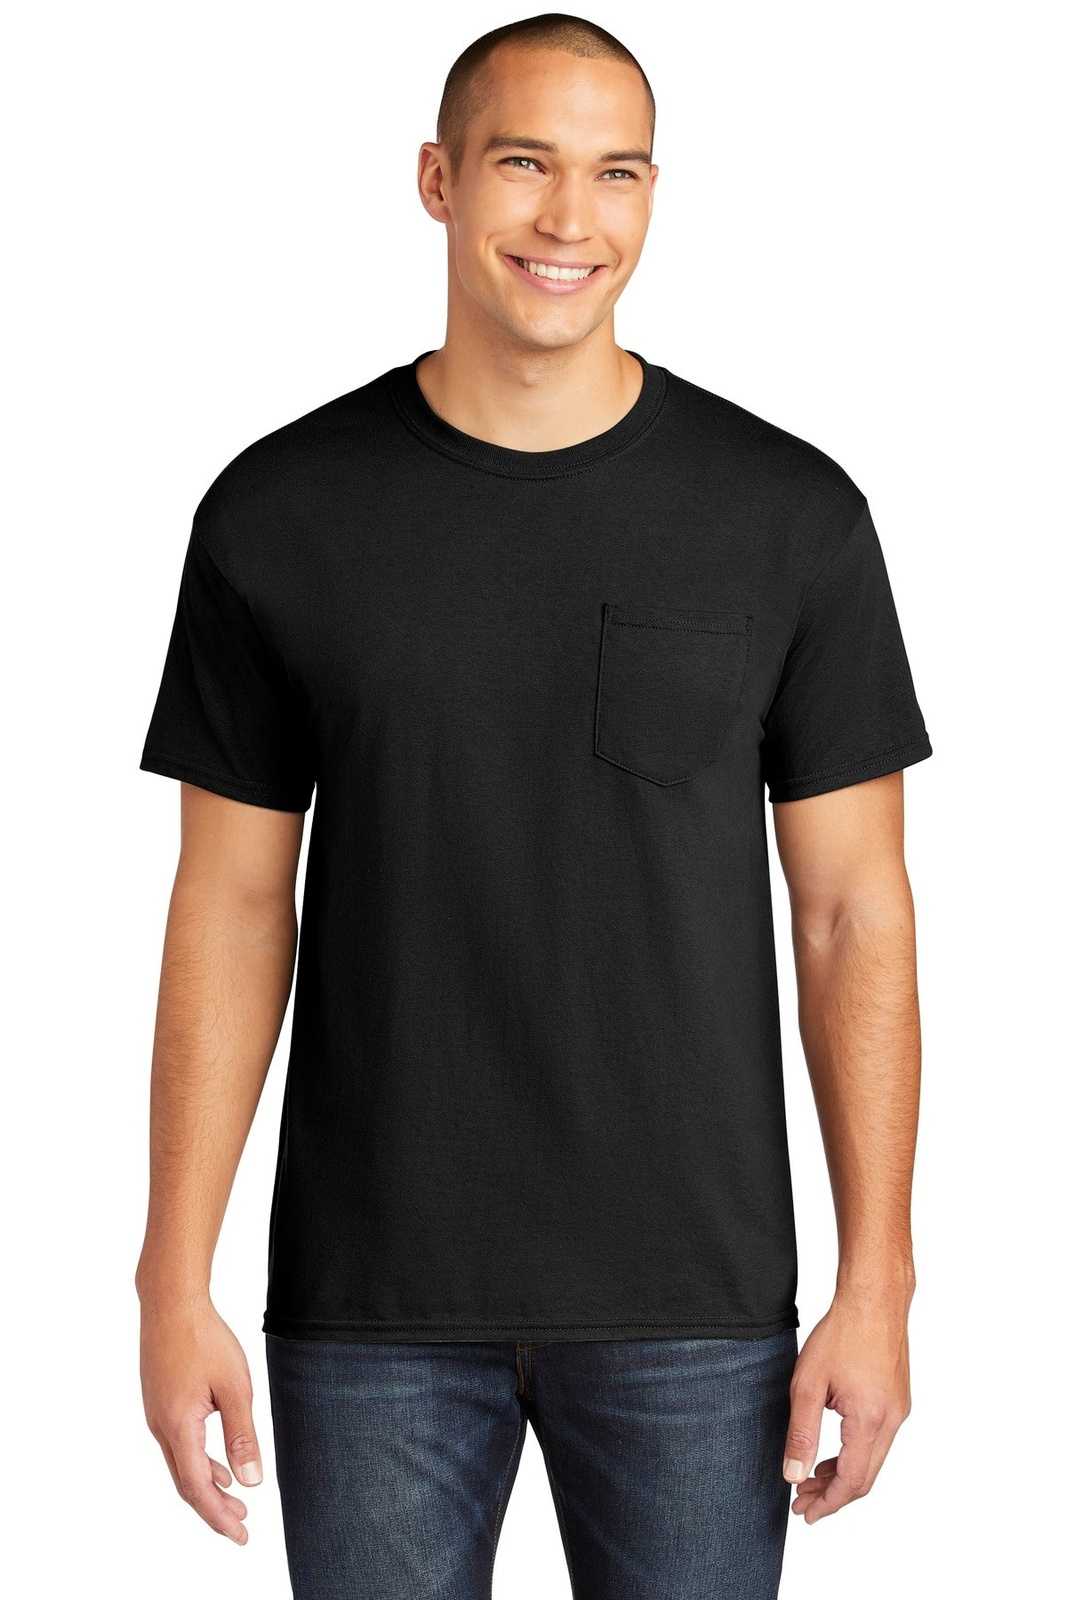 Gildan 5300 Heavy Cotton 100% Cotton Pocket T-Shirt - Black - HIT a Double